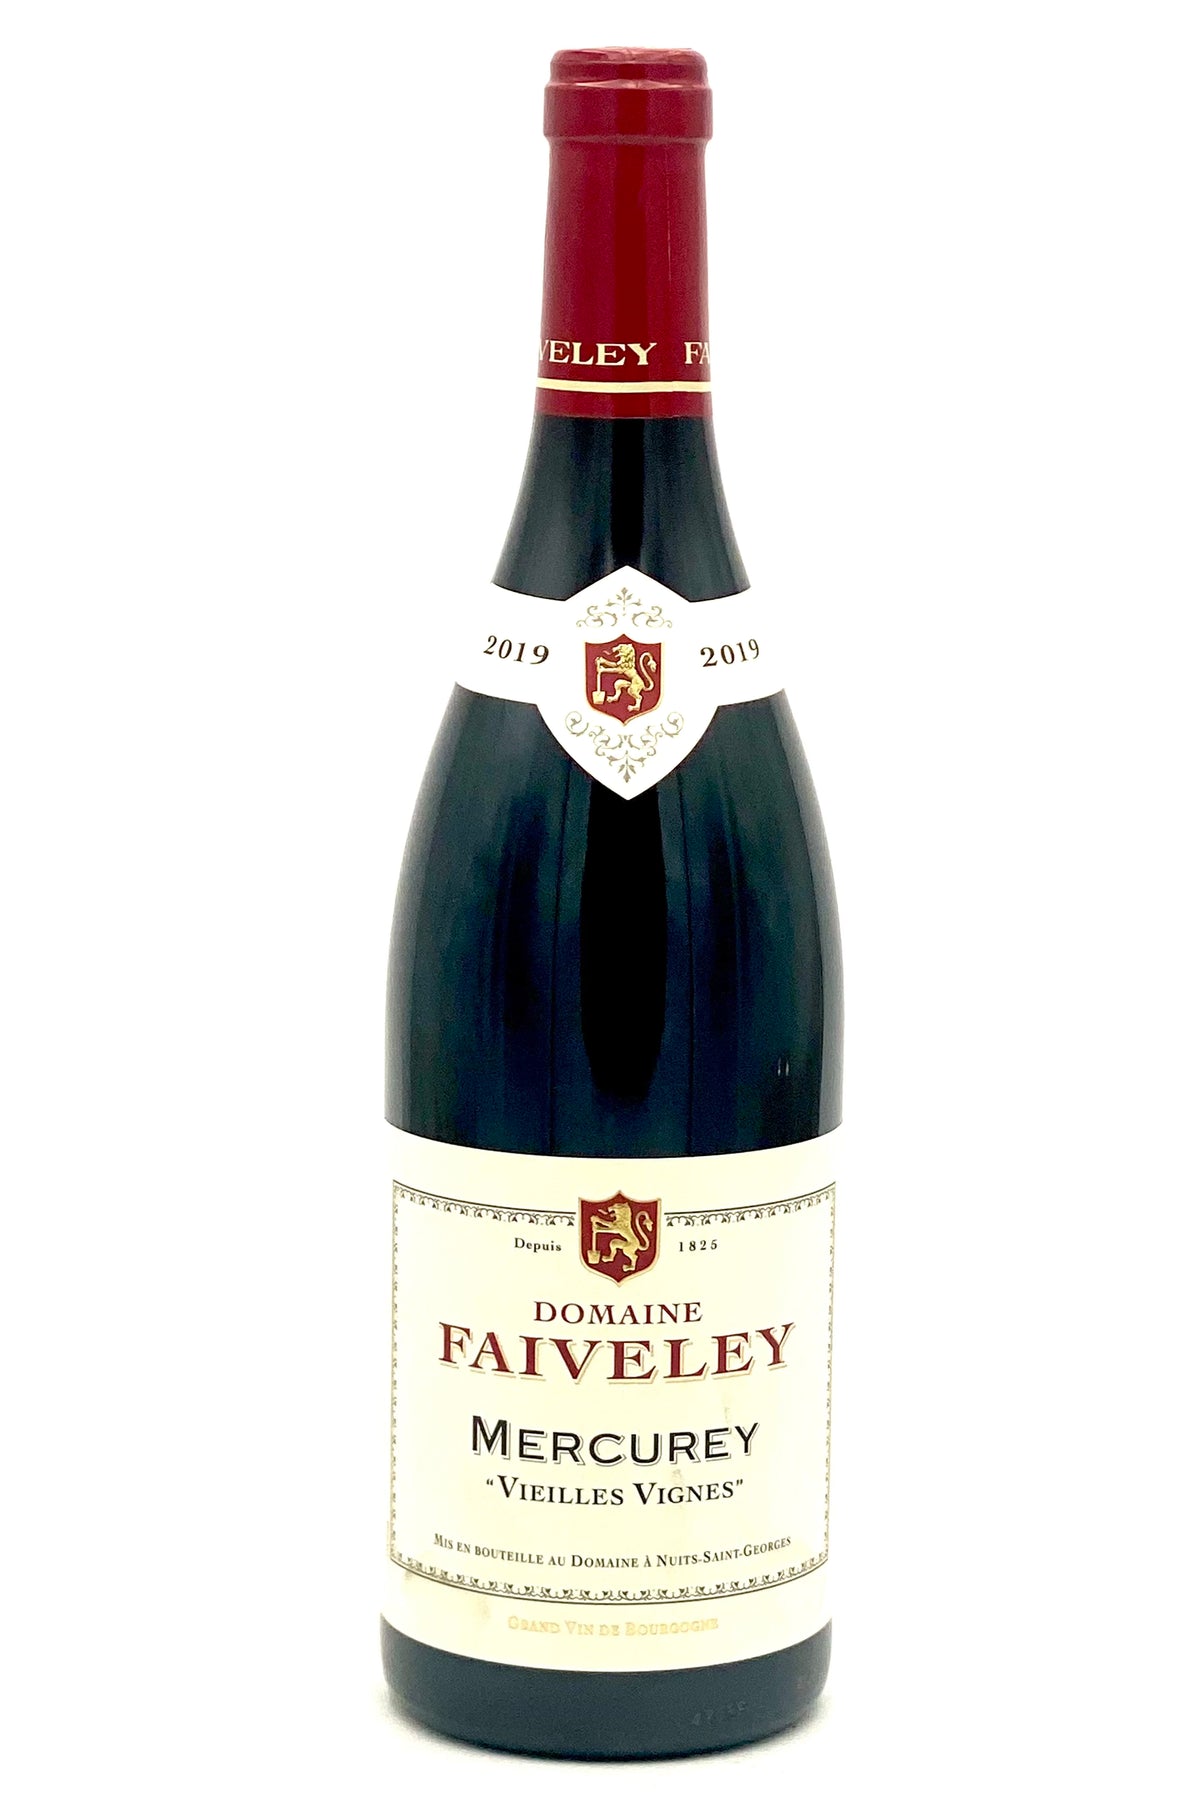 Domaine Faiveley 2019 Vieilles Vignes Mercurey Rouge